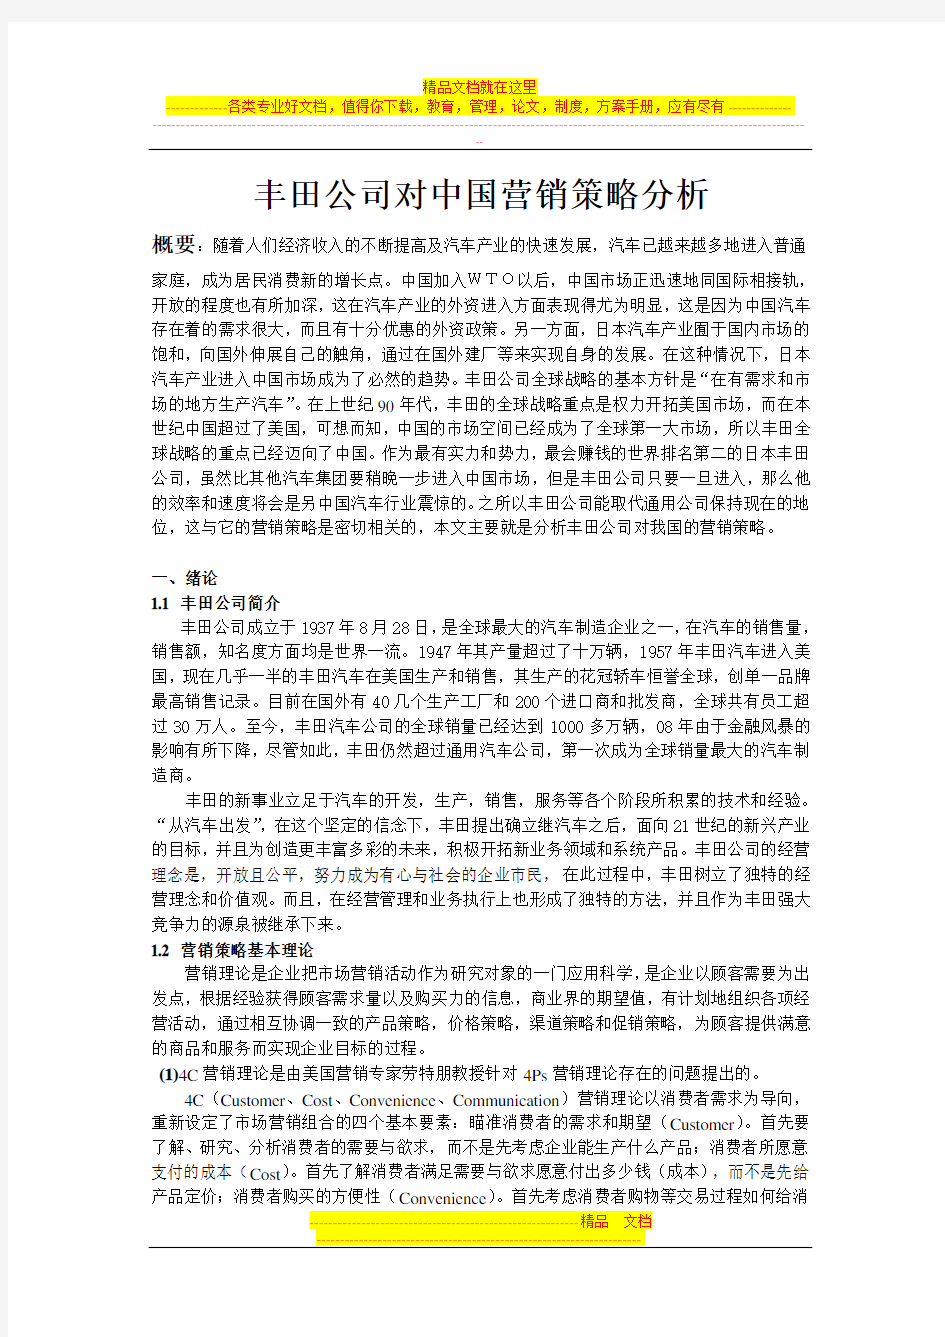 丰田公司对中国营销策略分析